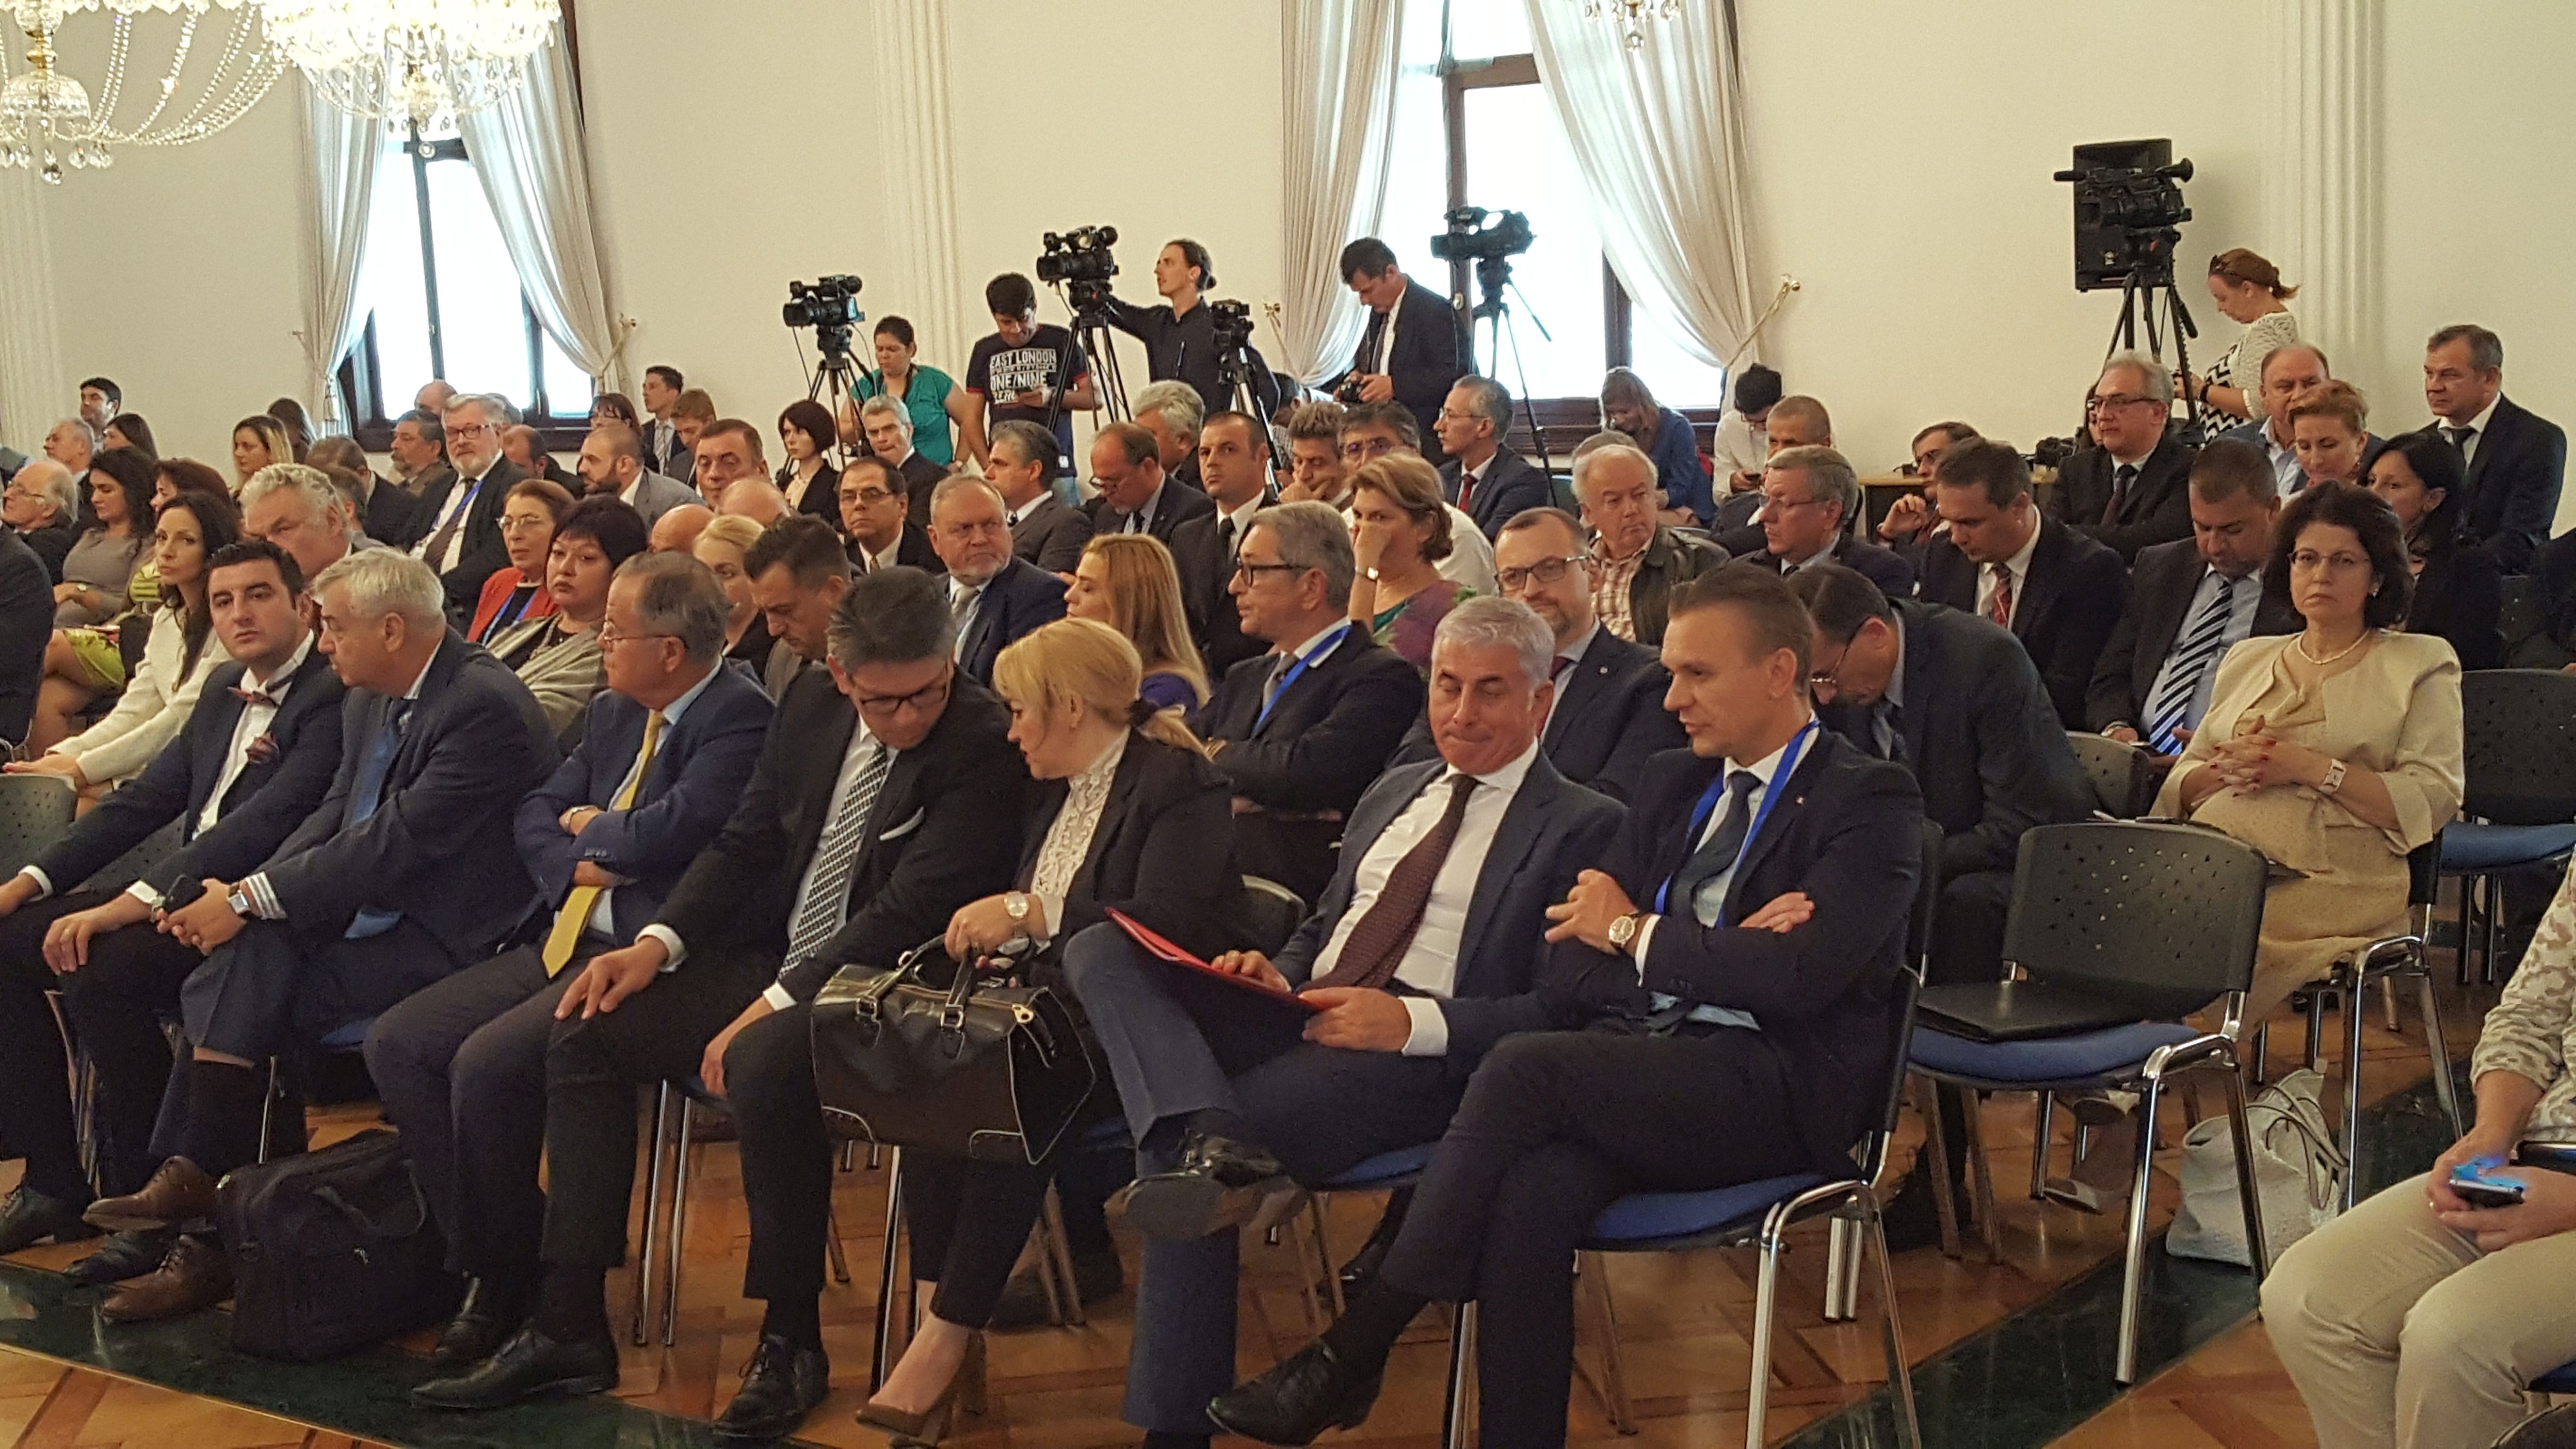 Câţi dintre ambasadorii României în străinătate prezenţi ieri la Reuniunea Diplomaţilor au auzit de familia Cotoi din Reghin, care face mobilă tapiţată şi exportă 20% din producţie? Nimeni. De asta suntem pe penultimul loc la PIB per capita în UE